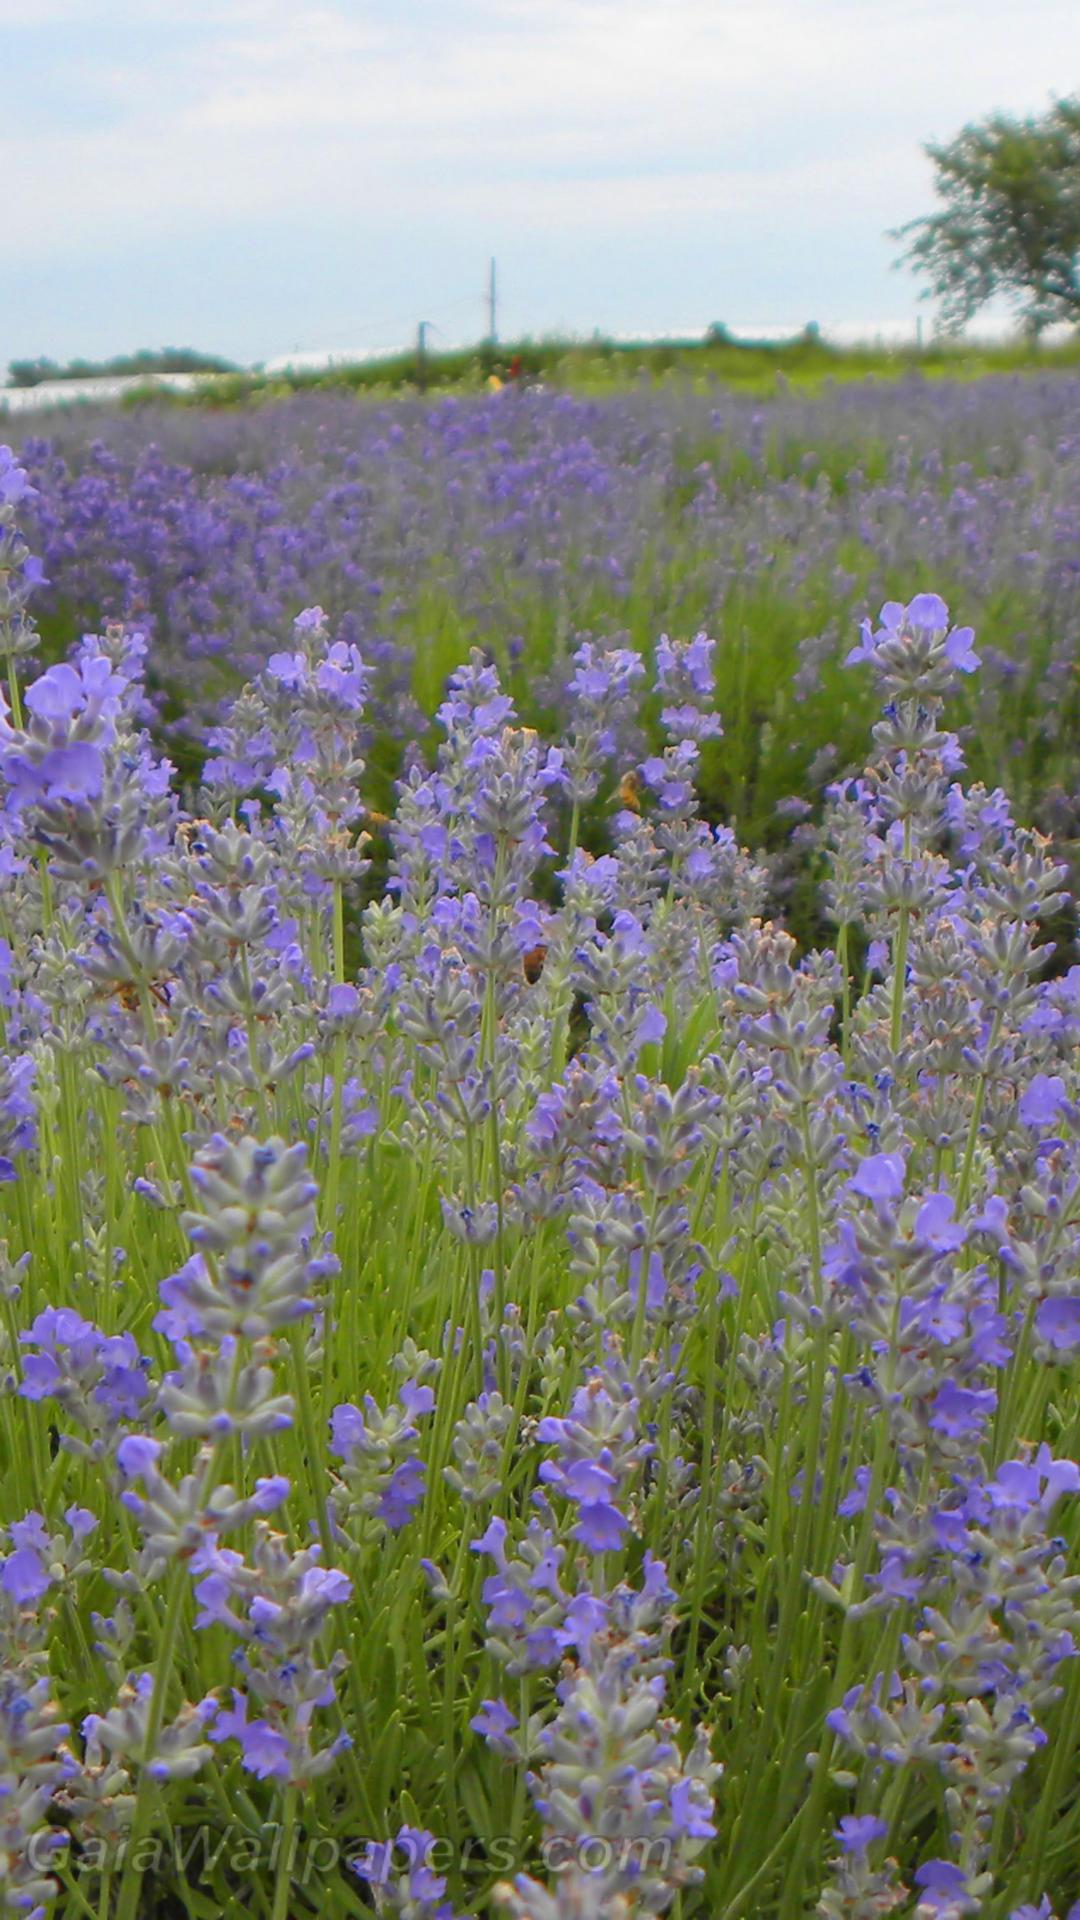 Lavender fields - Free desktop wallpapers